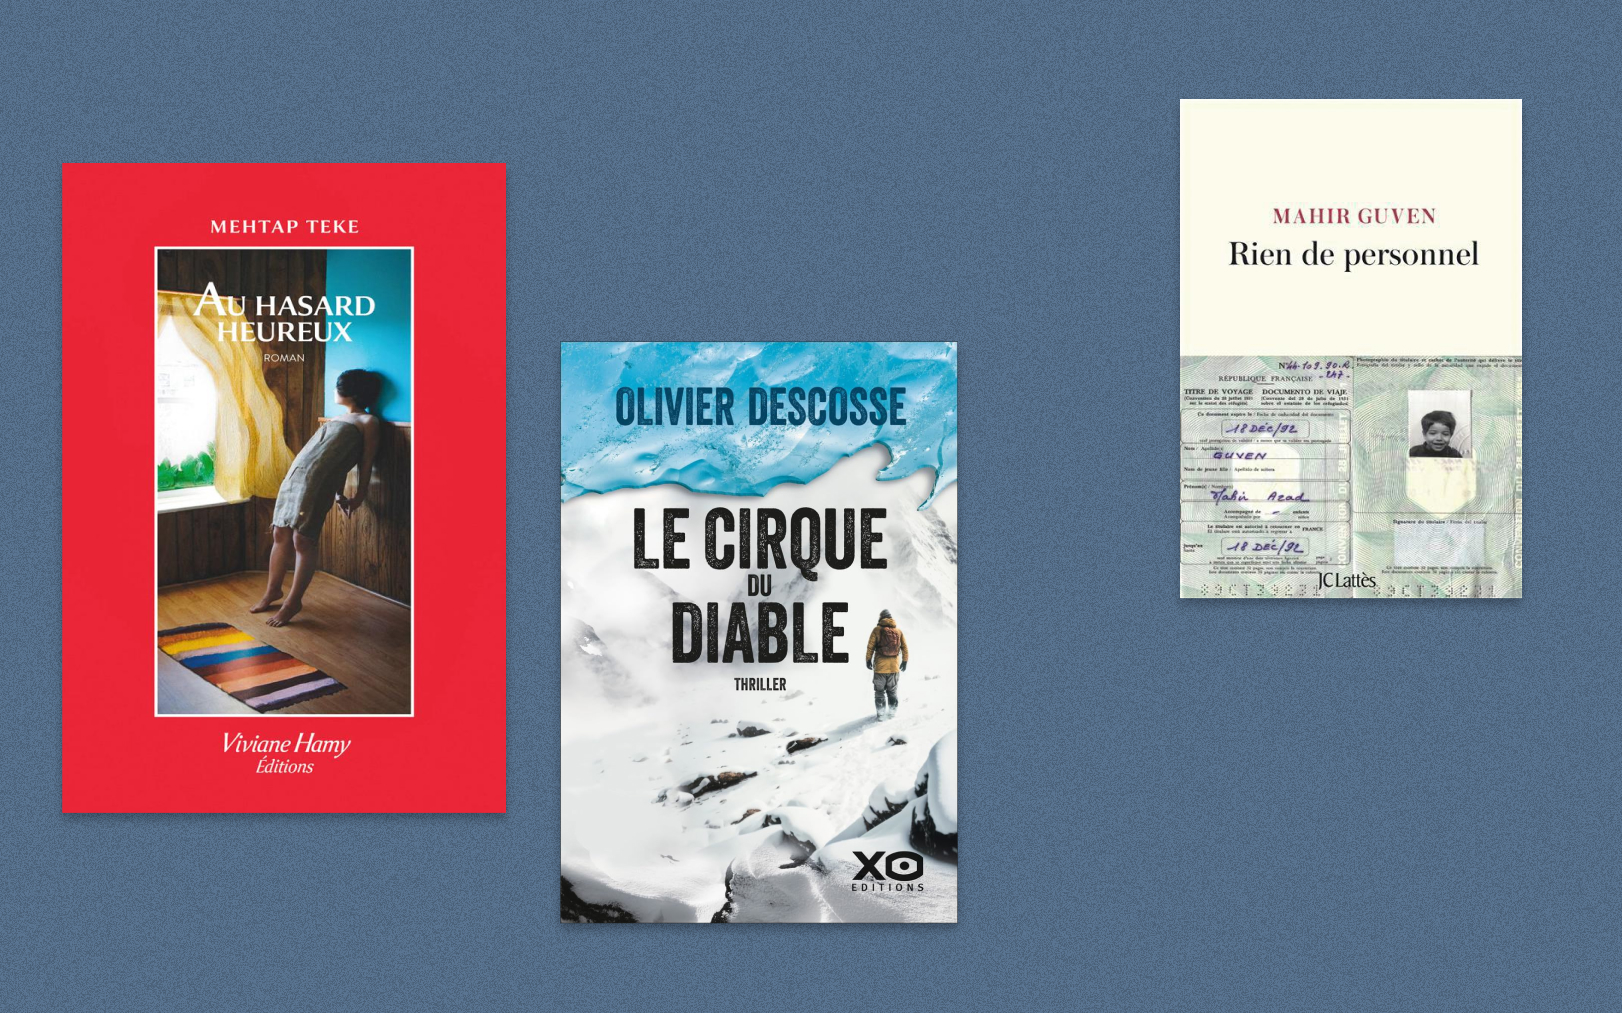 Parmi les ouvrages à ne pas manquer, « Au hasard heureux » de Mehtap Teke, « Le Cirque du diable » d’Olivier Descosse et « Rien de personnel » de Mahir Guven. Le Parisien-DA/DR